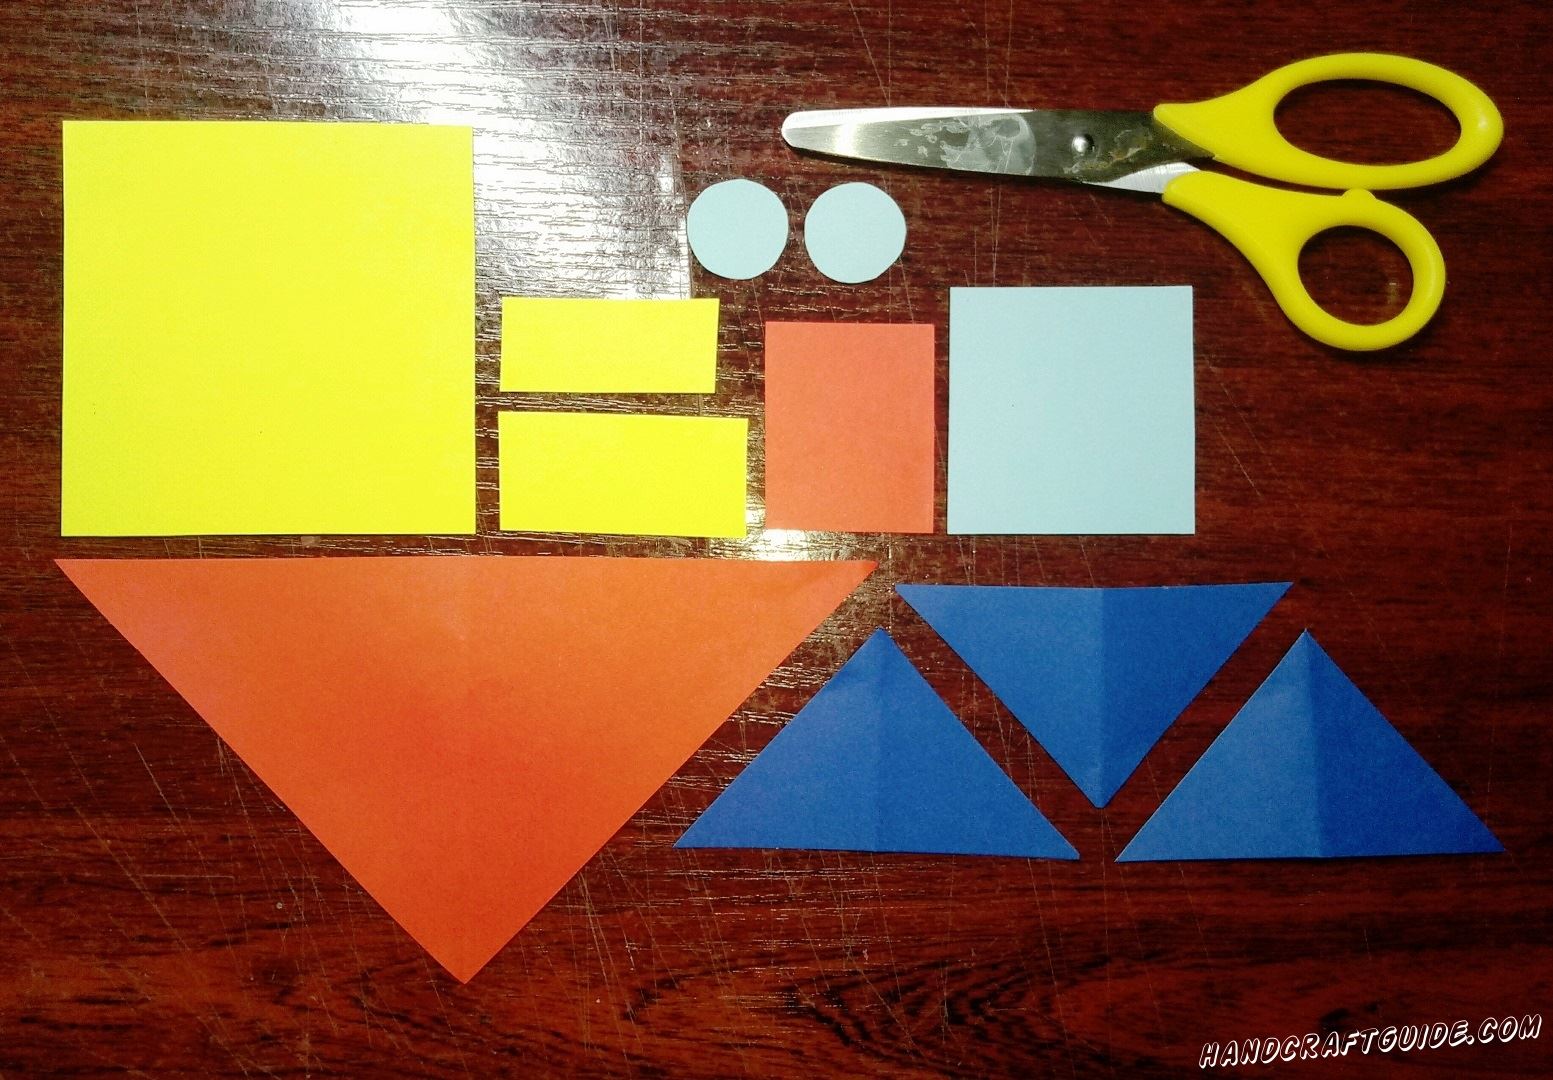 Для начала берем в руки бумаги, ножницы и вырезаем все необходимые нам фигурки: квадрат и два прямоугольника желтого цвета, три треугольника синего цвета, красный большой треугольник и небольшой квадрат, квадрат и два кружочка голубого цвета.